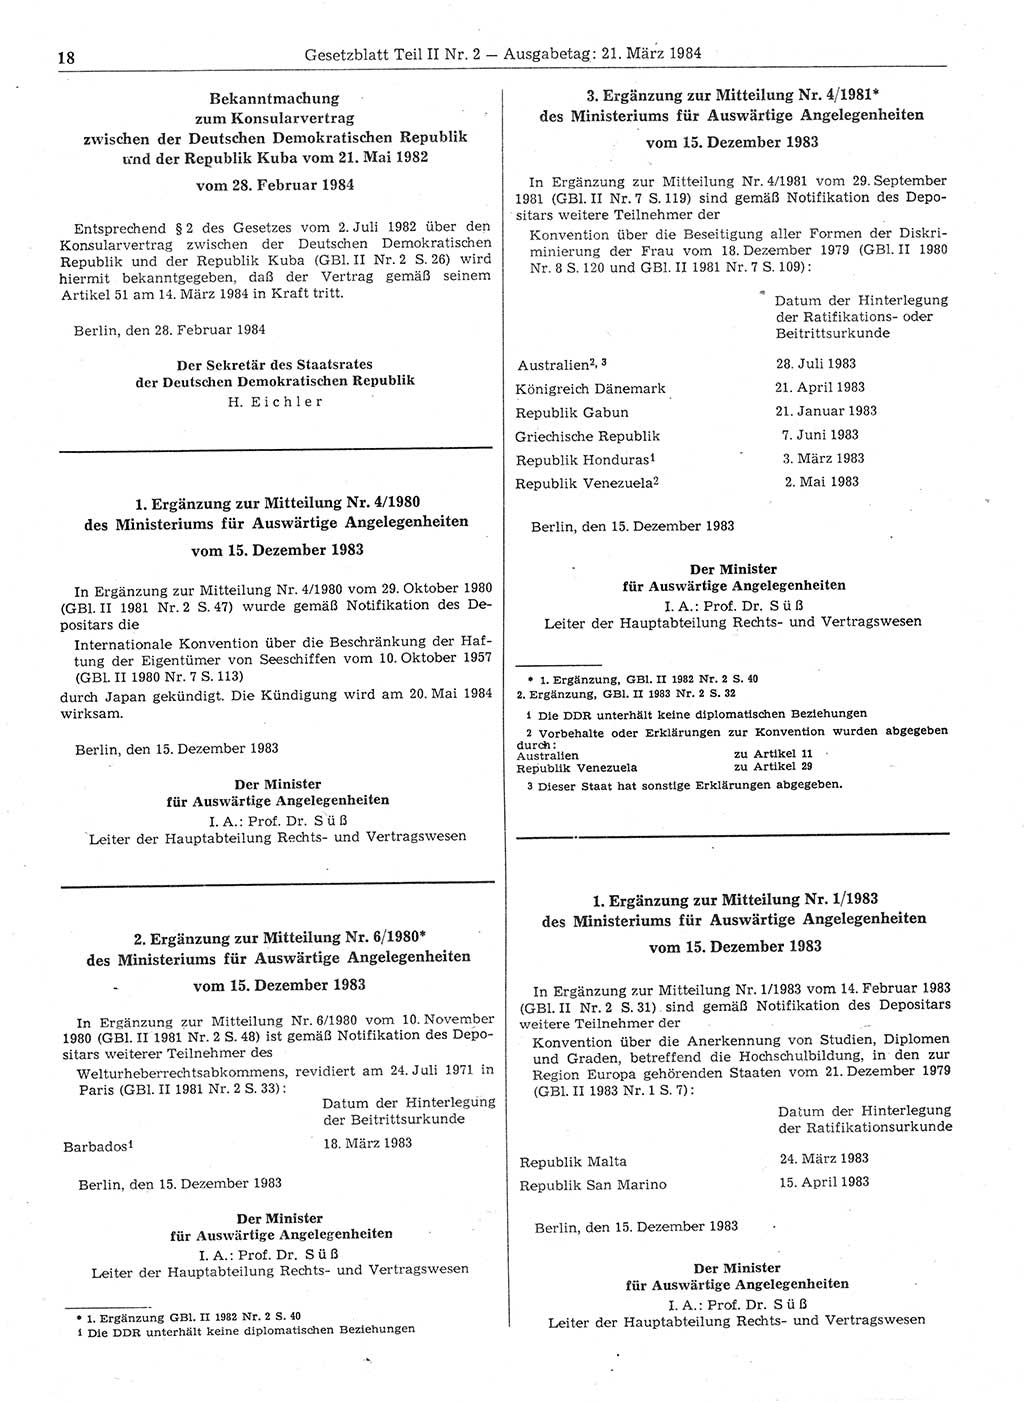 Gesetzblatt (GBl.) der Deutschen Demokratischen Republik (DDR) Teil ⅠⅠ 1984, Seite 18 (GBl. DDR ⅠⅠ 1984, S. 18)